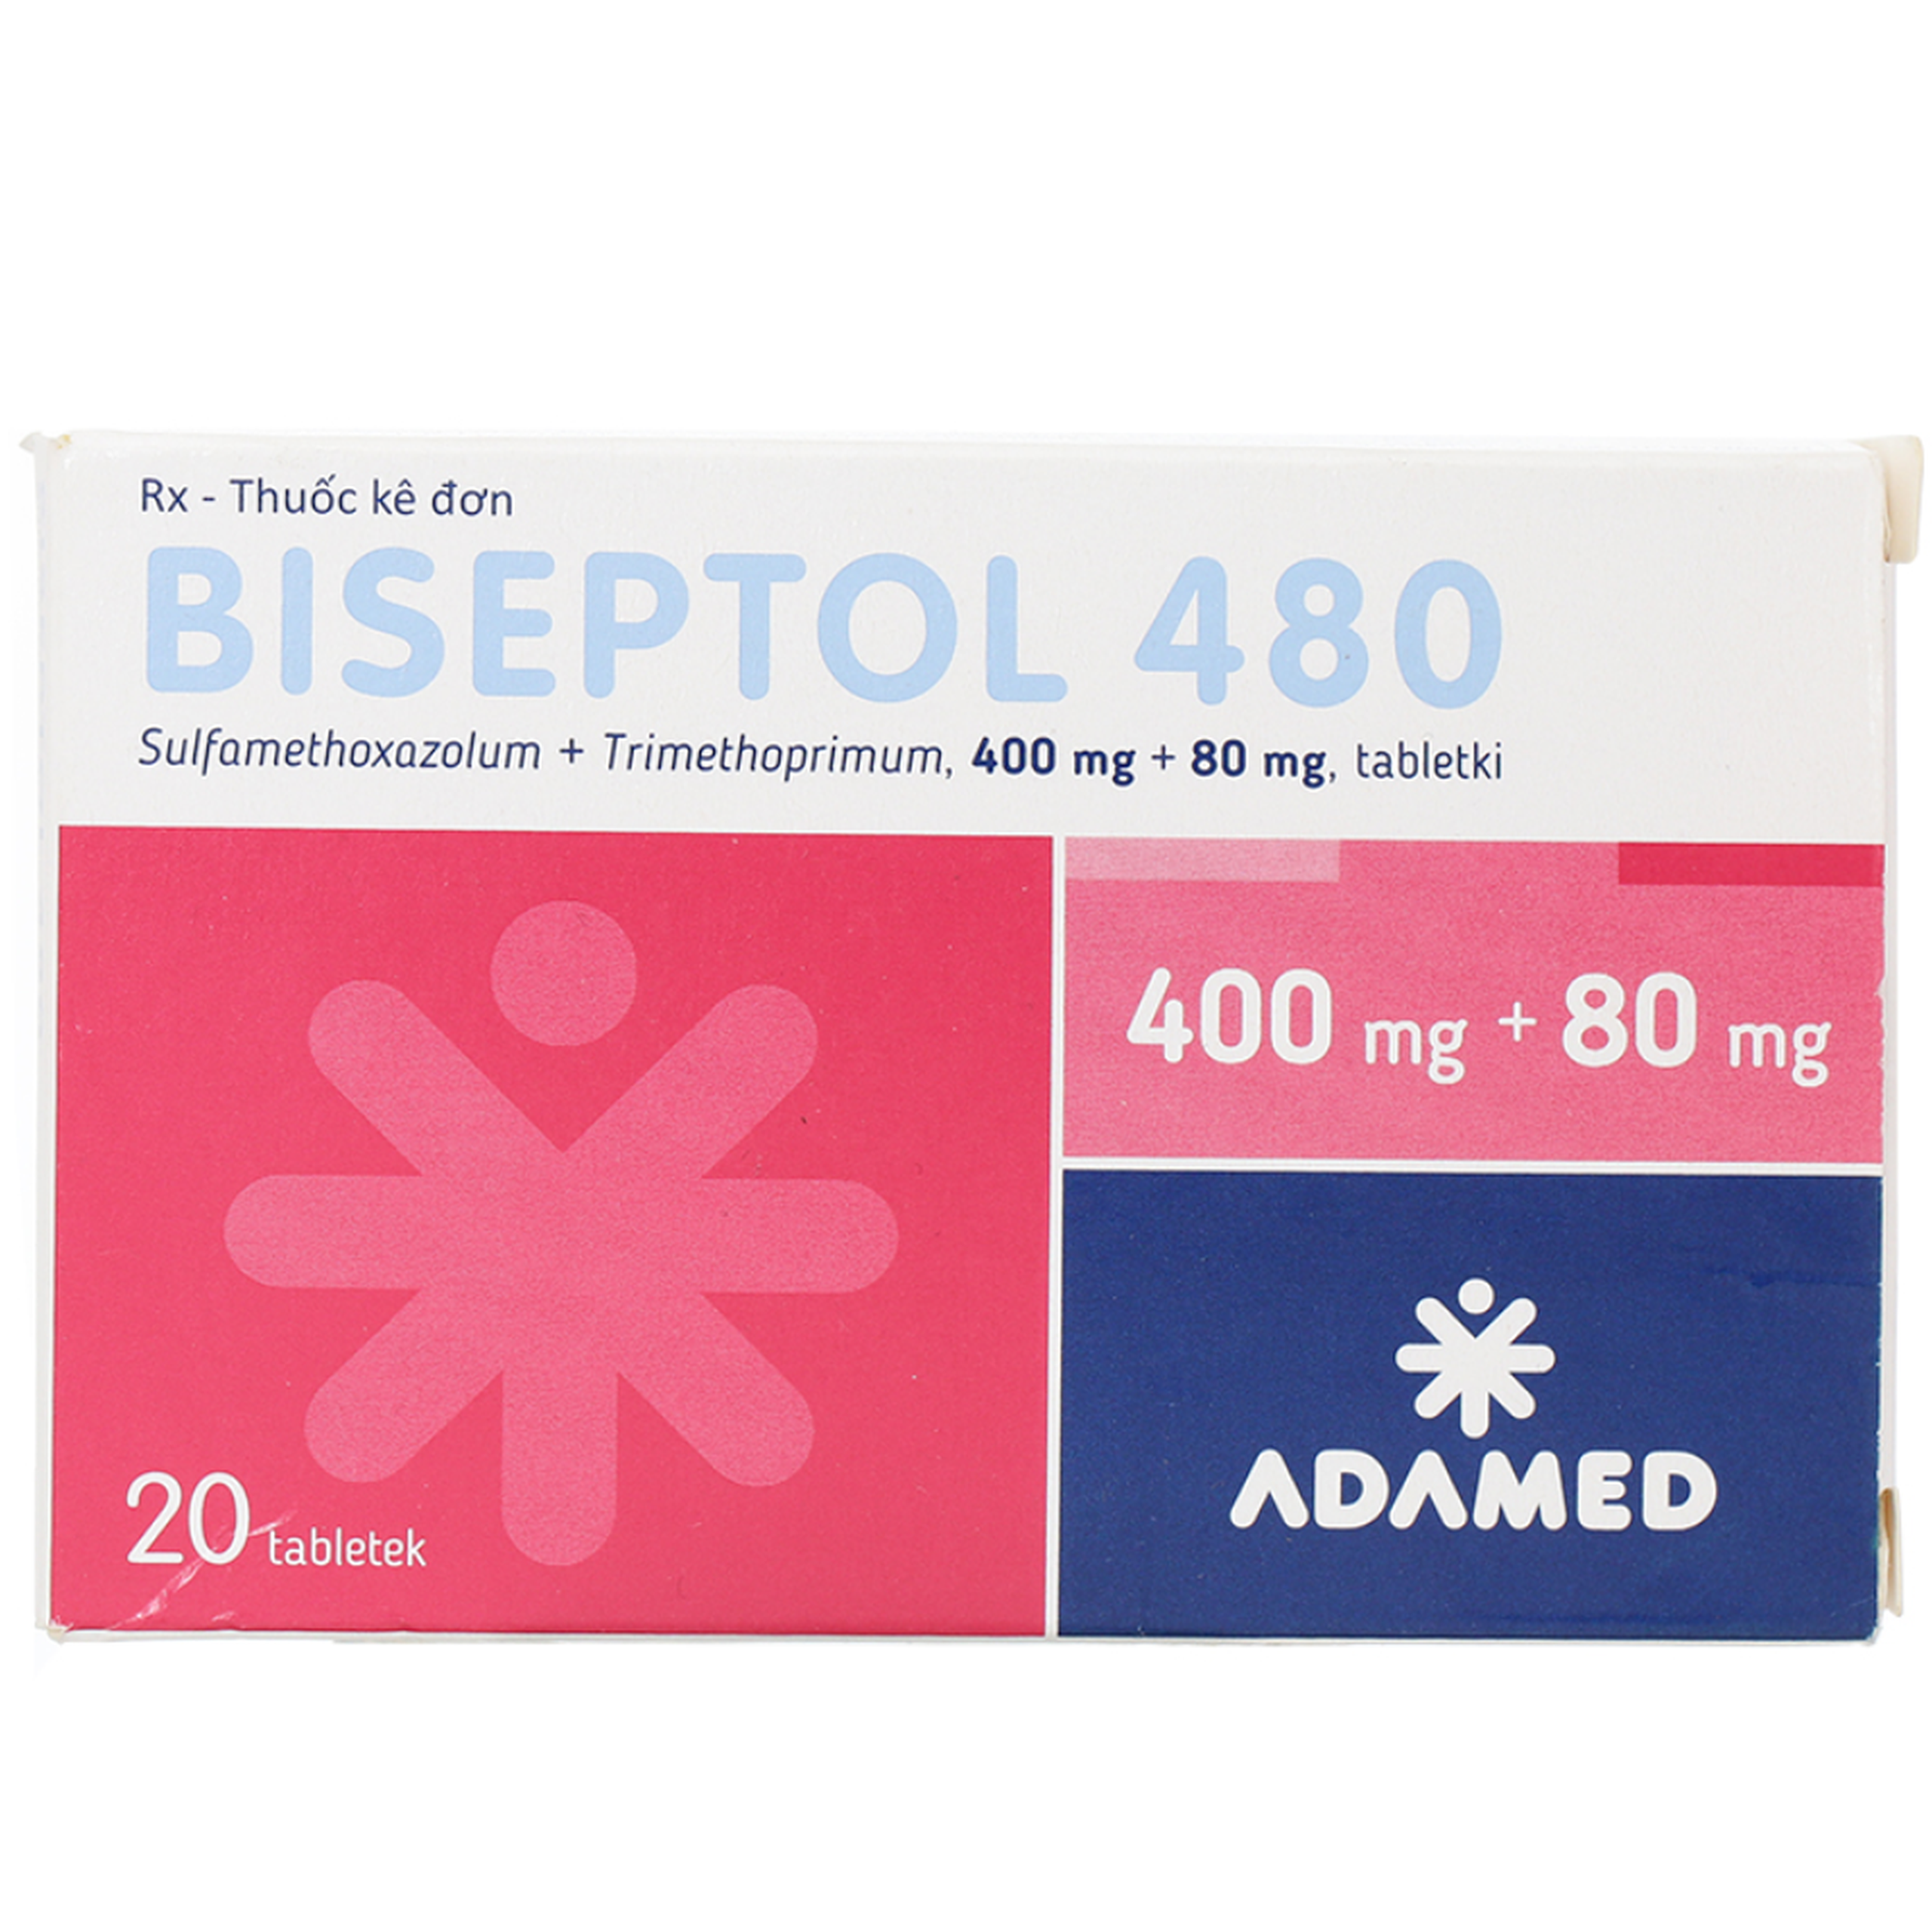 Thuốc Biseptol 480 Adamed điều trị nhiễm trùng do vi sinh vật nhạy cảm với thuốc (1 vỉ x 20 viên)